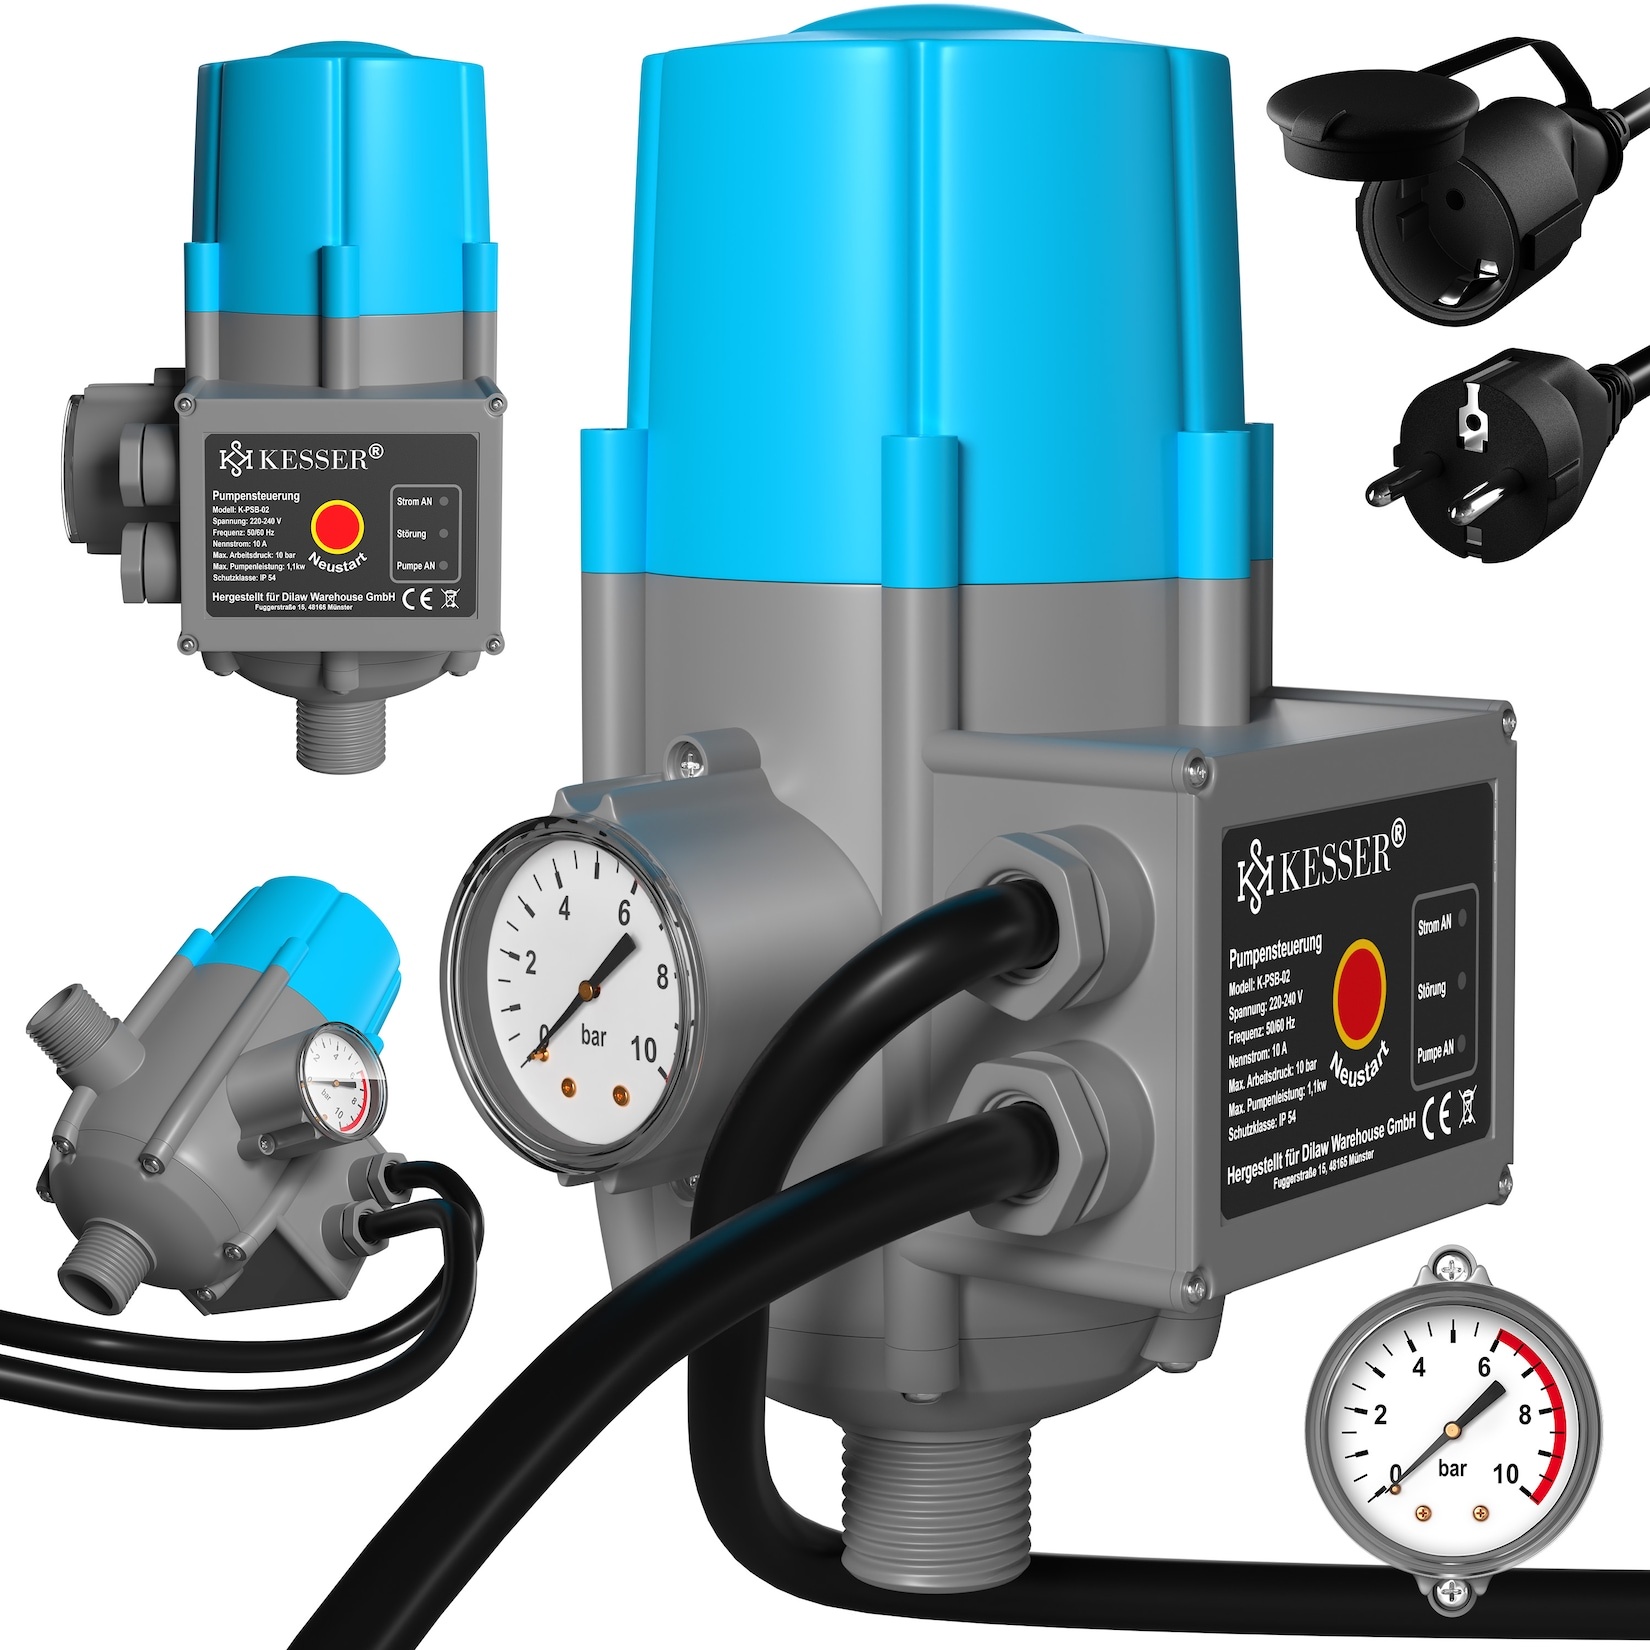 KESSER® Pumpensteuerung mit Baranzeige mit Kabel 10 bar Druckwächter elektrisch Druckschalter überwacht den Wasserdruck - automatisches Ein- und Ausschalten